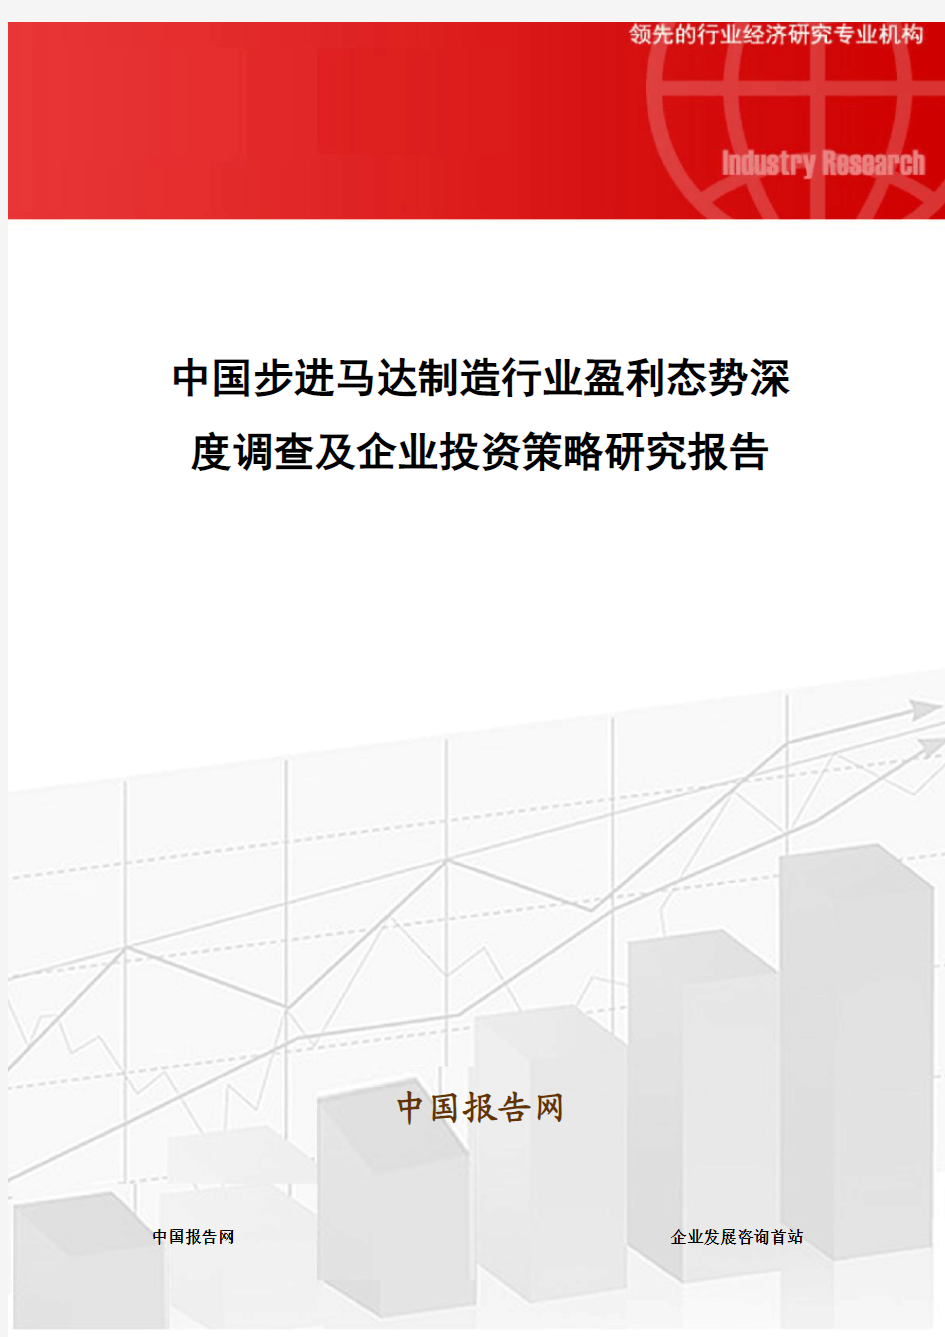 中国步进马达制造行业盈利态势深度调查及企业投资策略研究报告